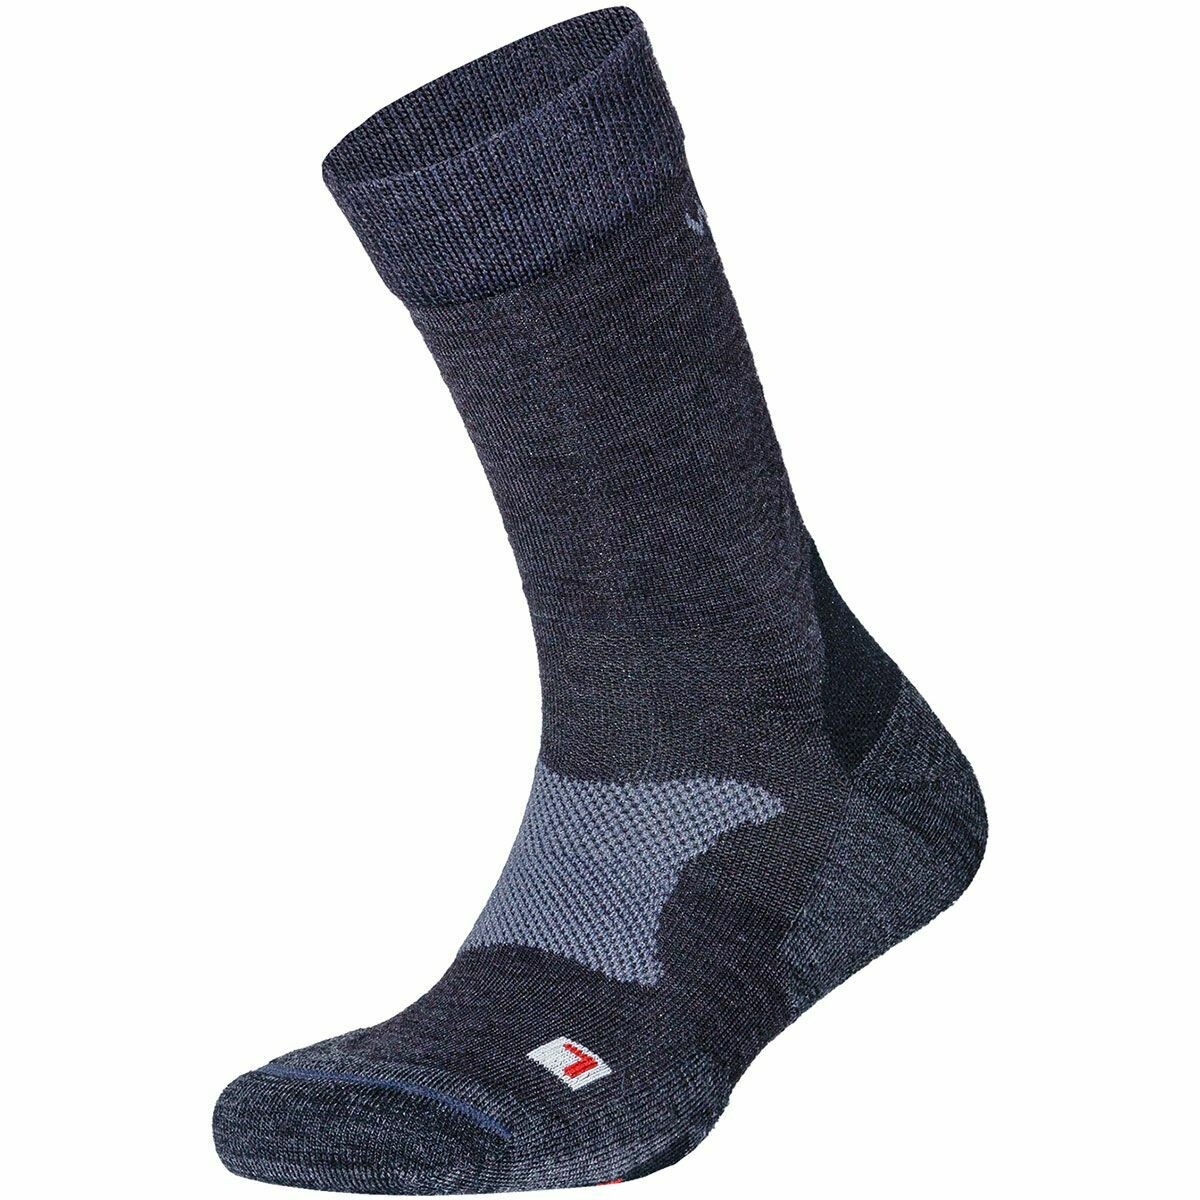 Wapiti ZS02 Zeckenschutz Socken, Farbe: anthrazit, Größe: 36-38